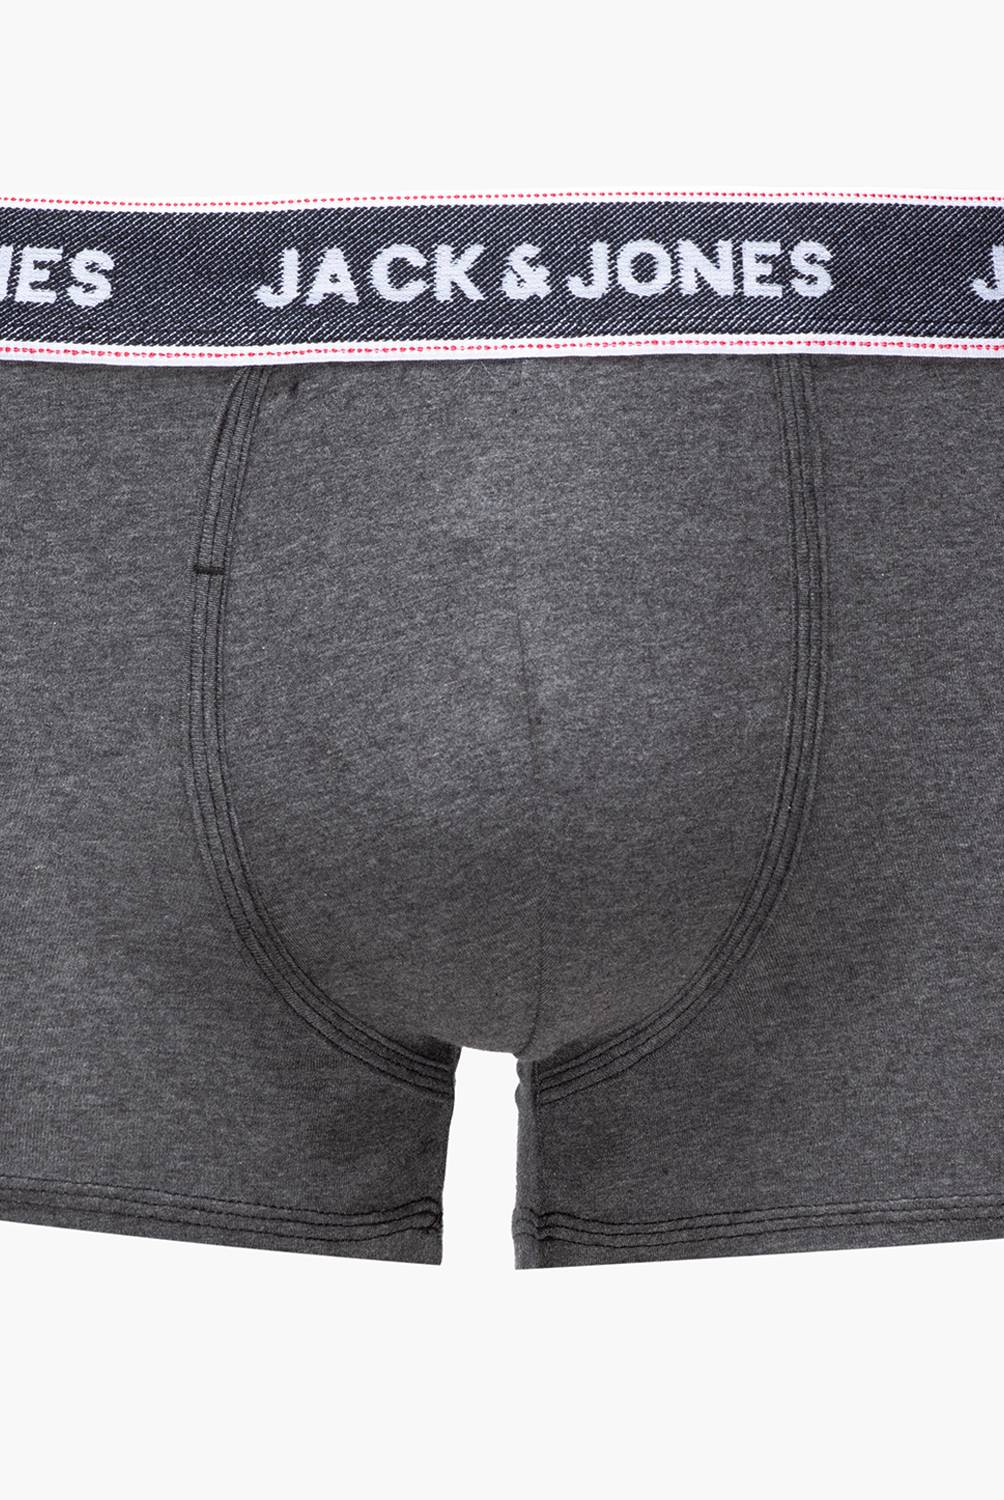 JACK&JONES - Pack 3 Boxers Hombre Jack&Jones